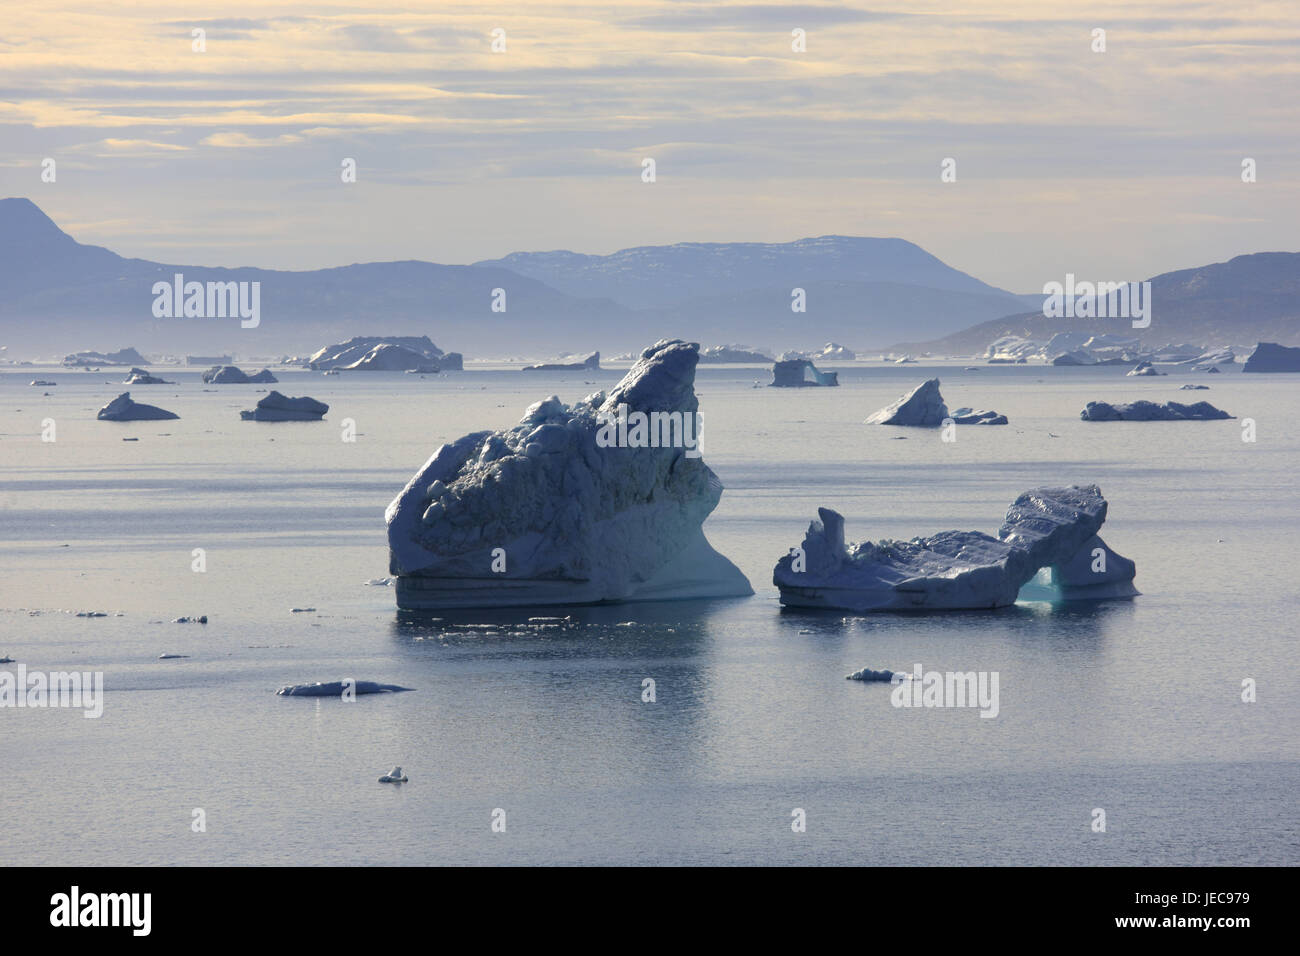 La Groenlandia, Uummannaq, Fjord, iceberg, nel nord della Groenlandia, destinazione, scenario, sul mare Artico, ghiaccio, ghiacciaio, float, paesaggi costieri, visualizzare larghezza, distanza, montagne, cloudies, opaco, drift, ghiaccio freddo, cambiamenti climatici, Foto Stock